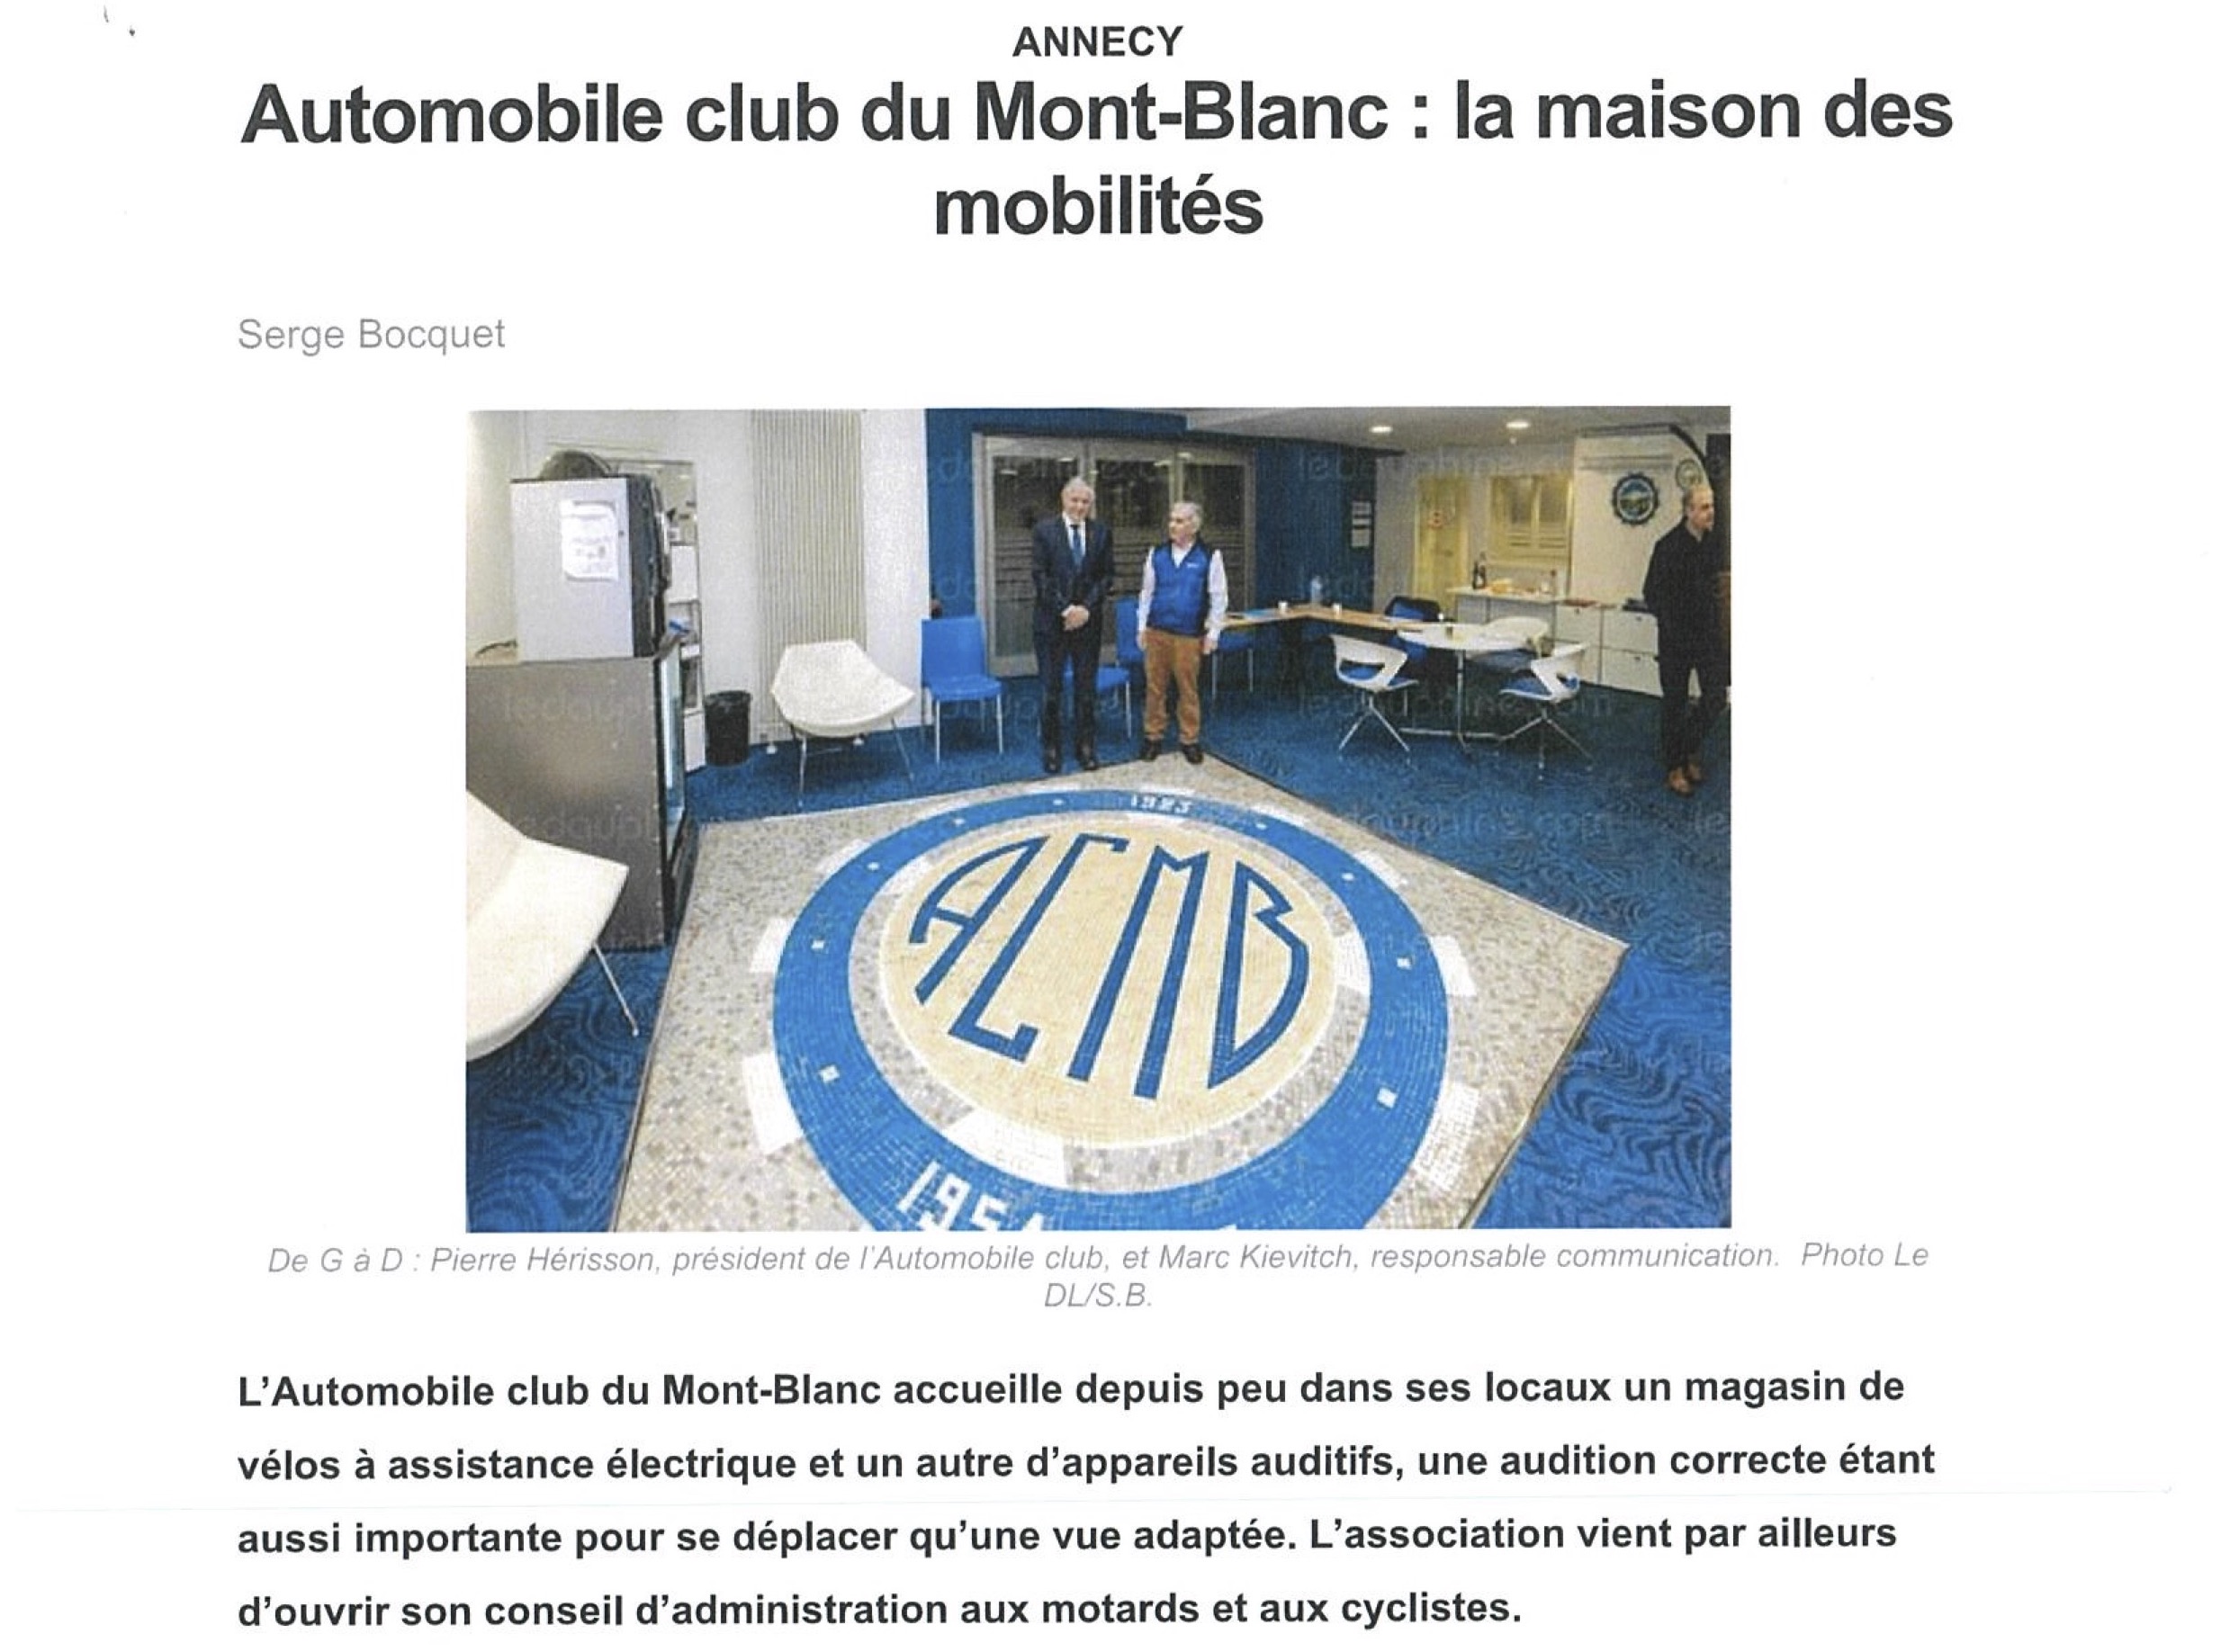 Automobile Club du Mont-Blanc, la maison des mobilités